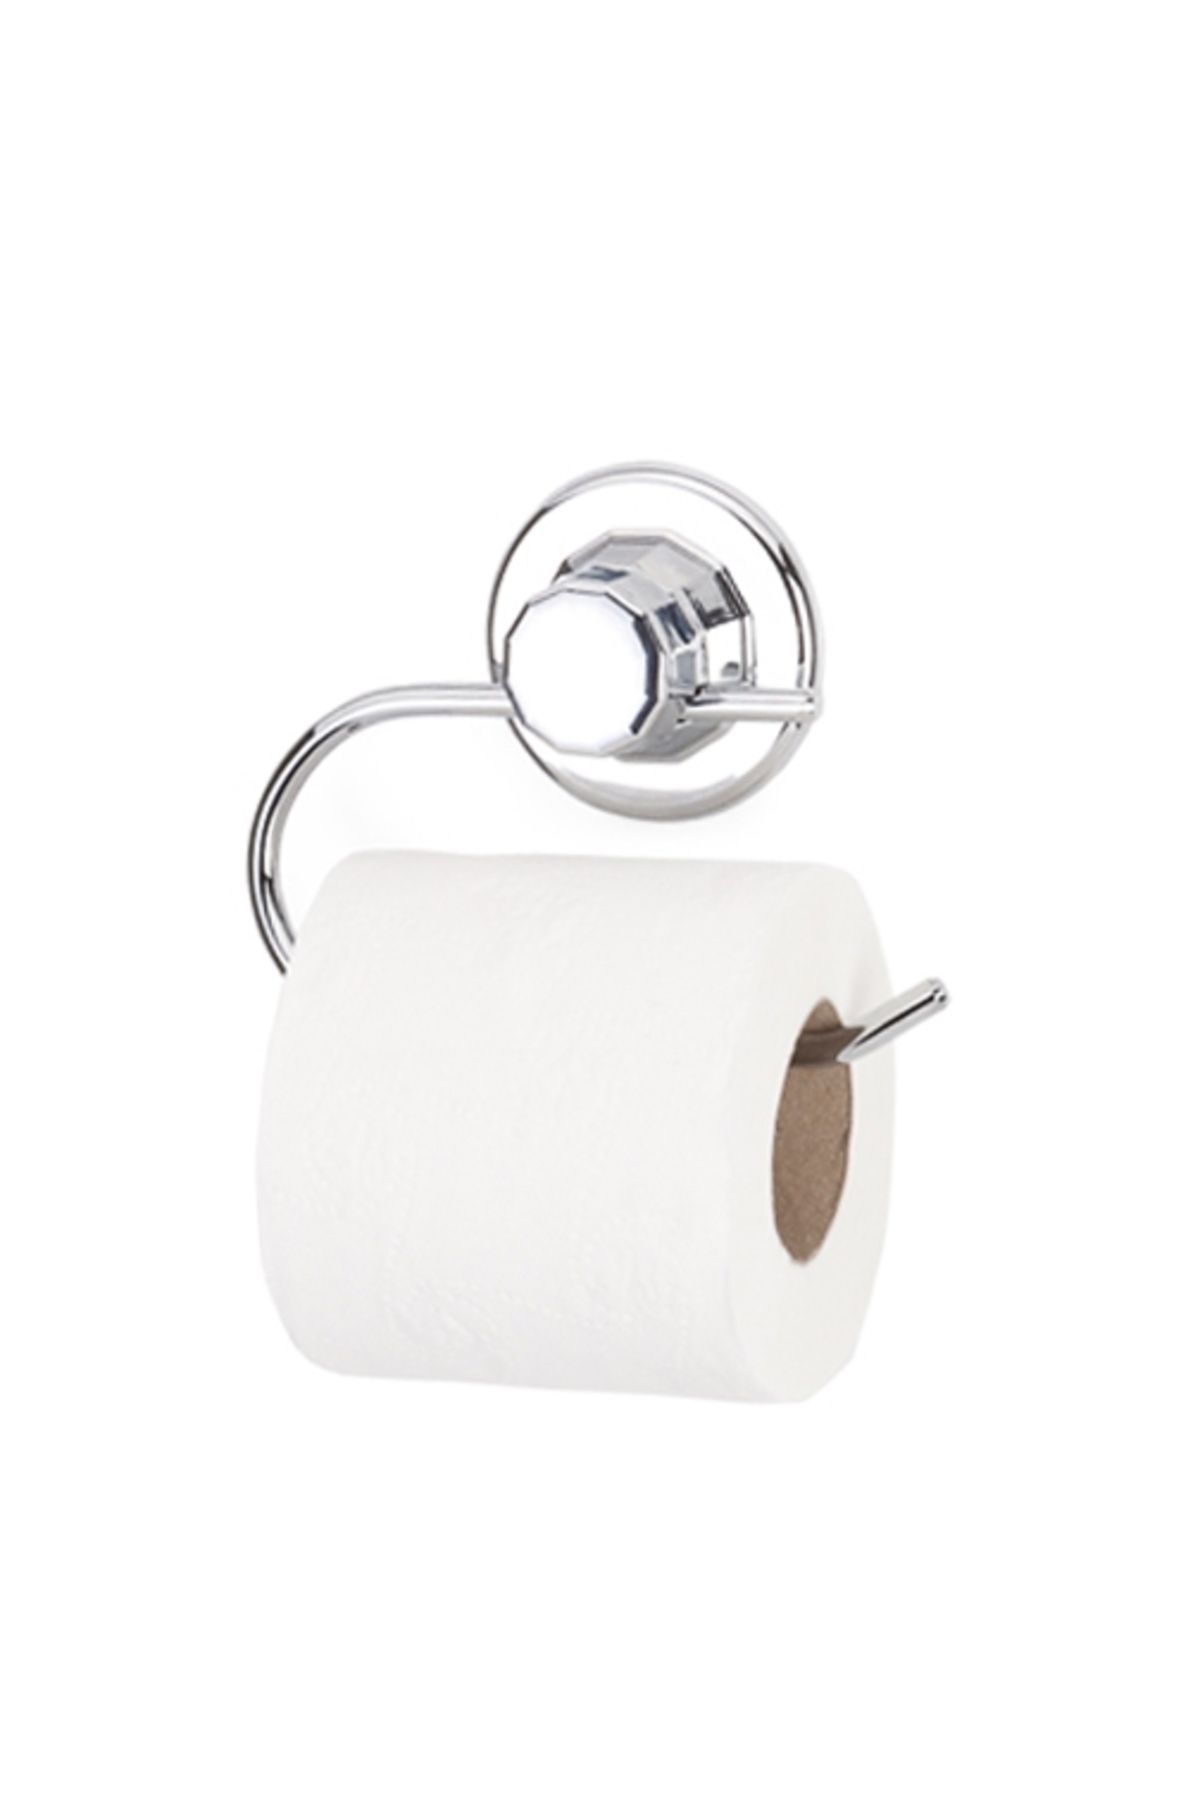 Evistro Vakumlu Vantuzlu Tuvalet Kağıtlığı Askısı Paslanmaz Krom